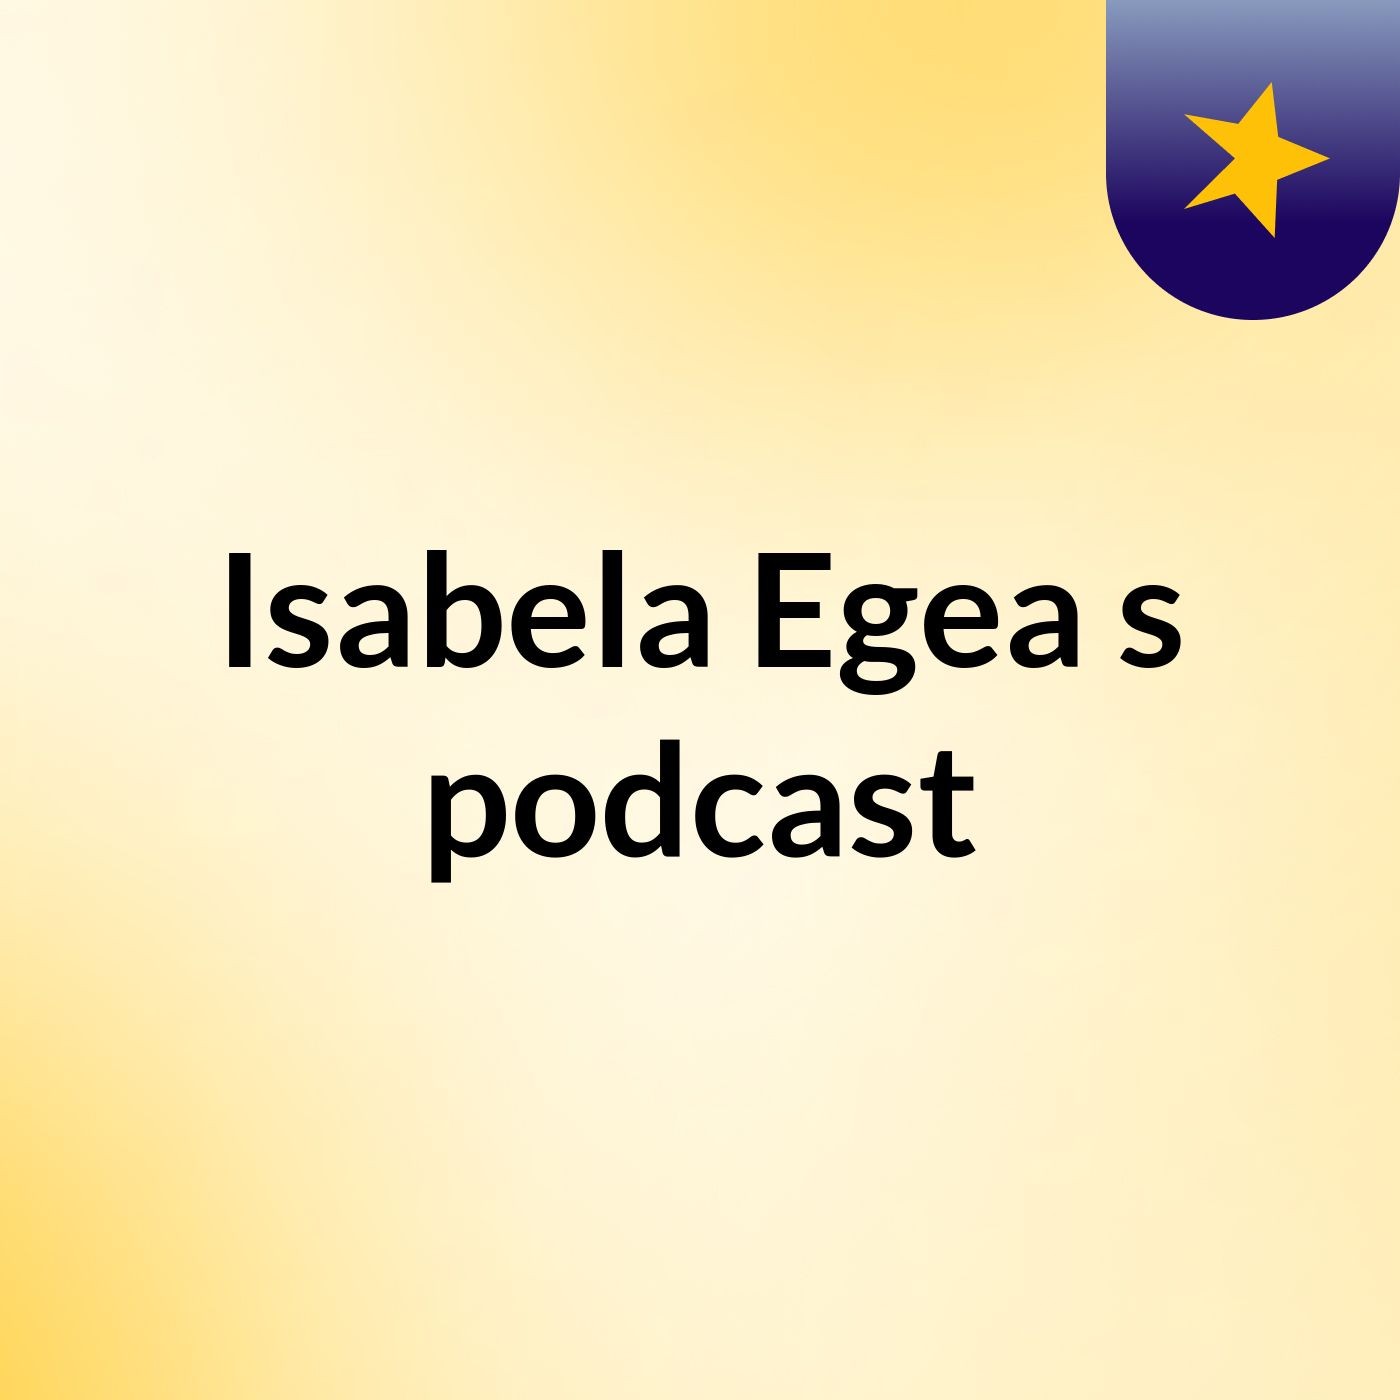 Isabela Egea's podcast